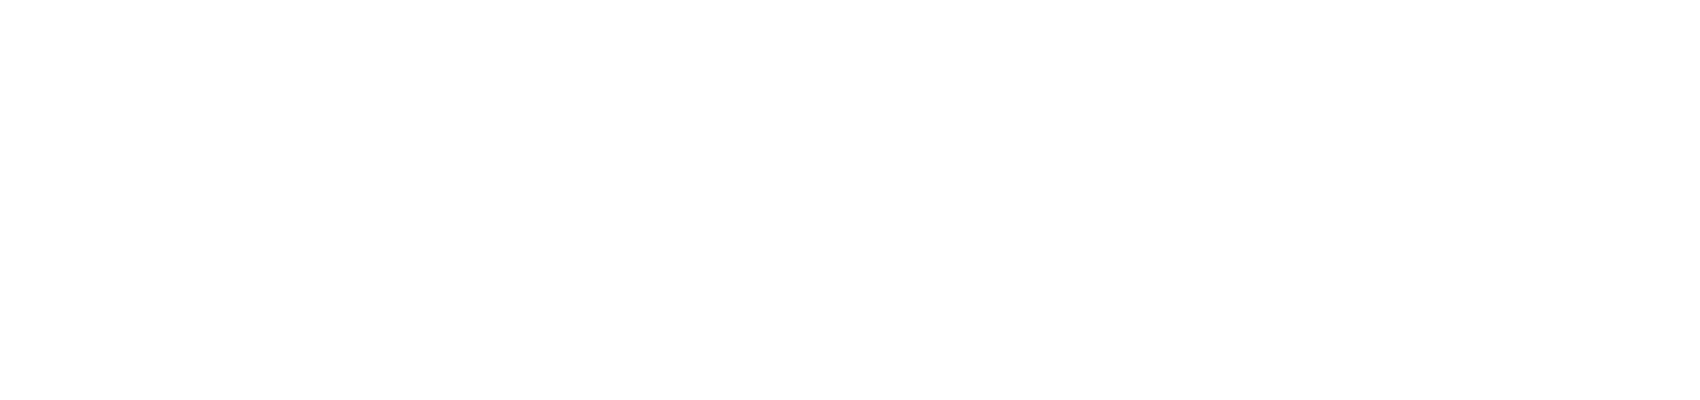 BIENVENIDO-SOCIO-SYD